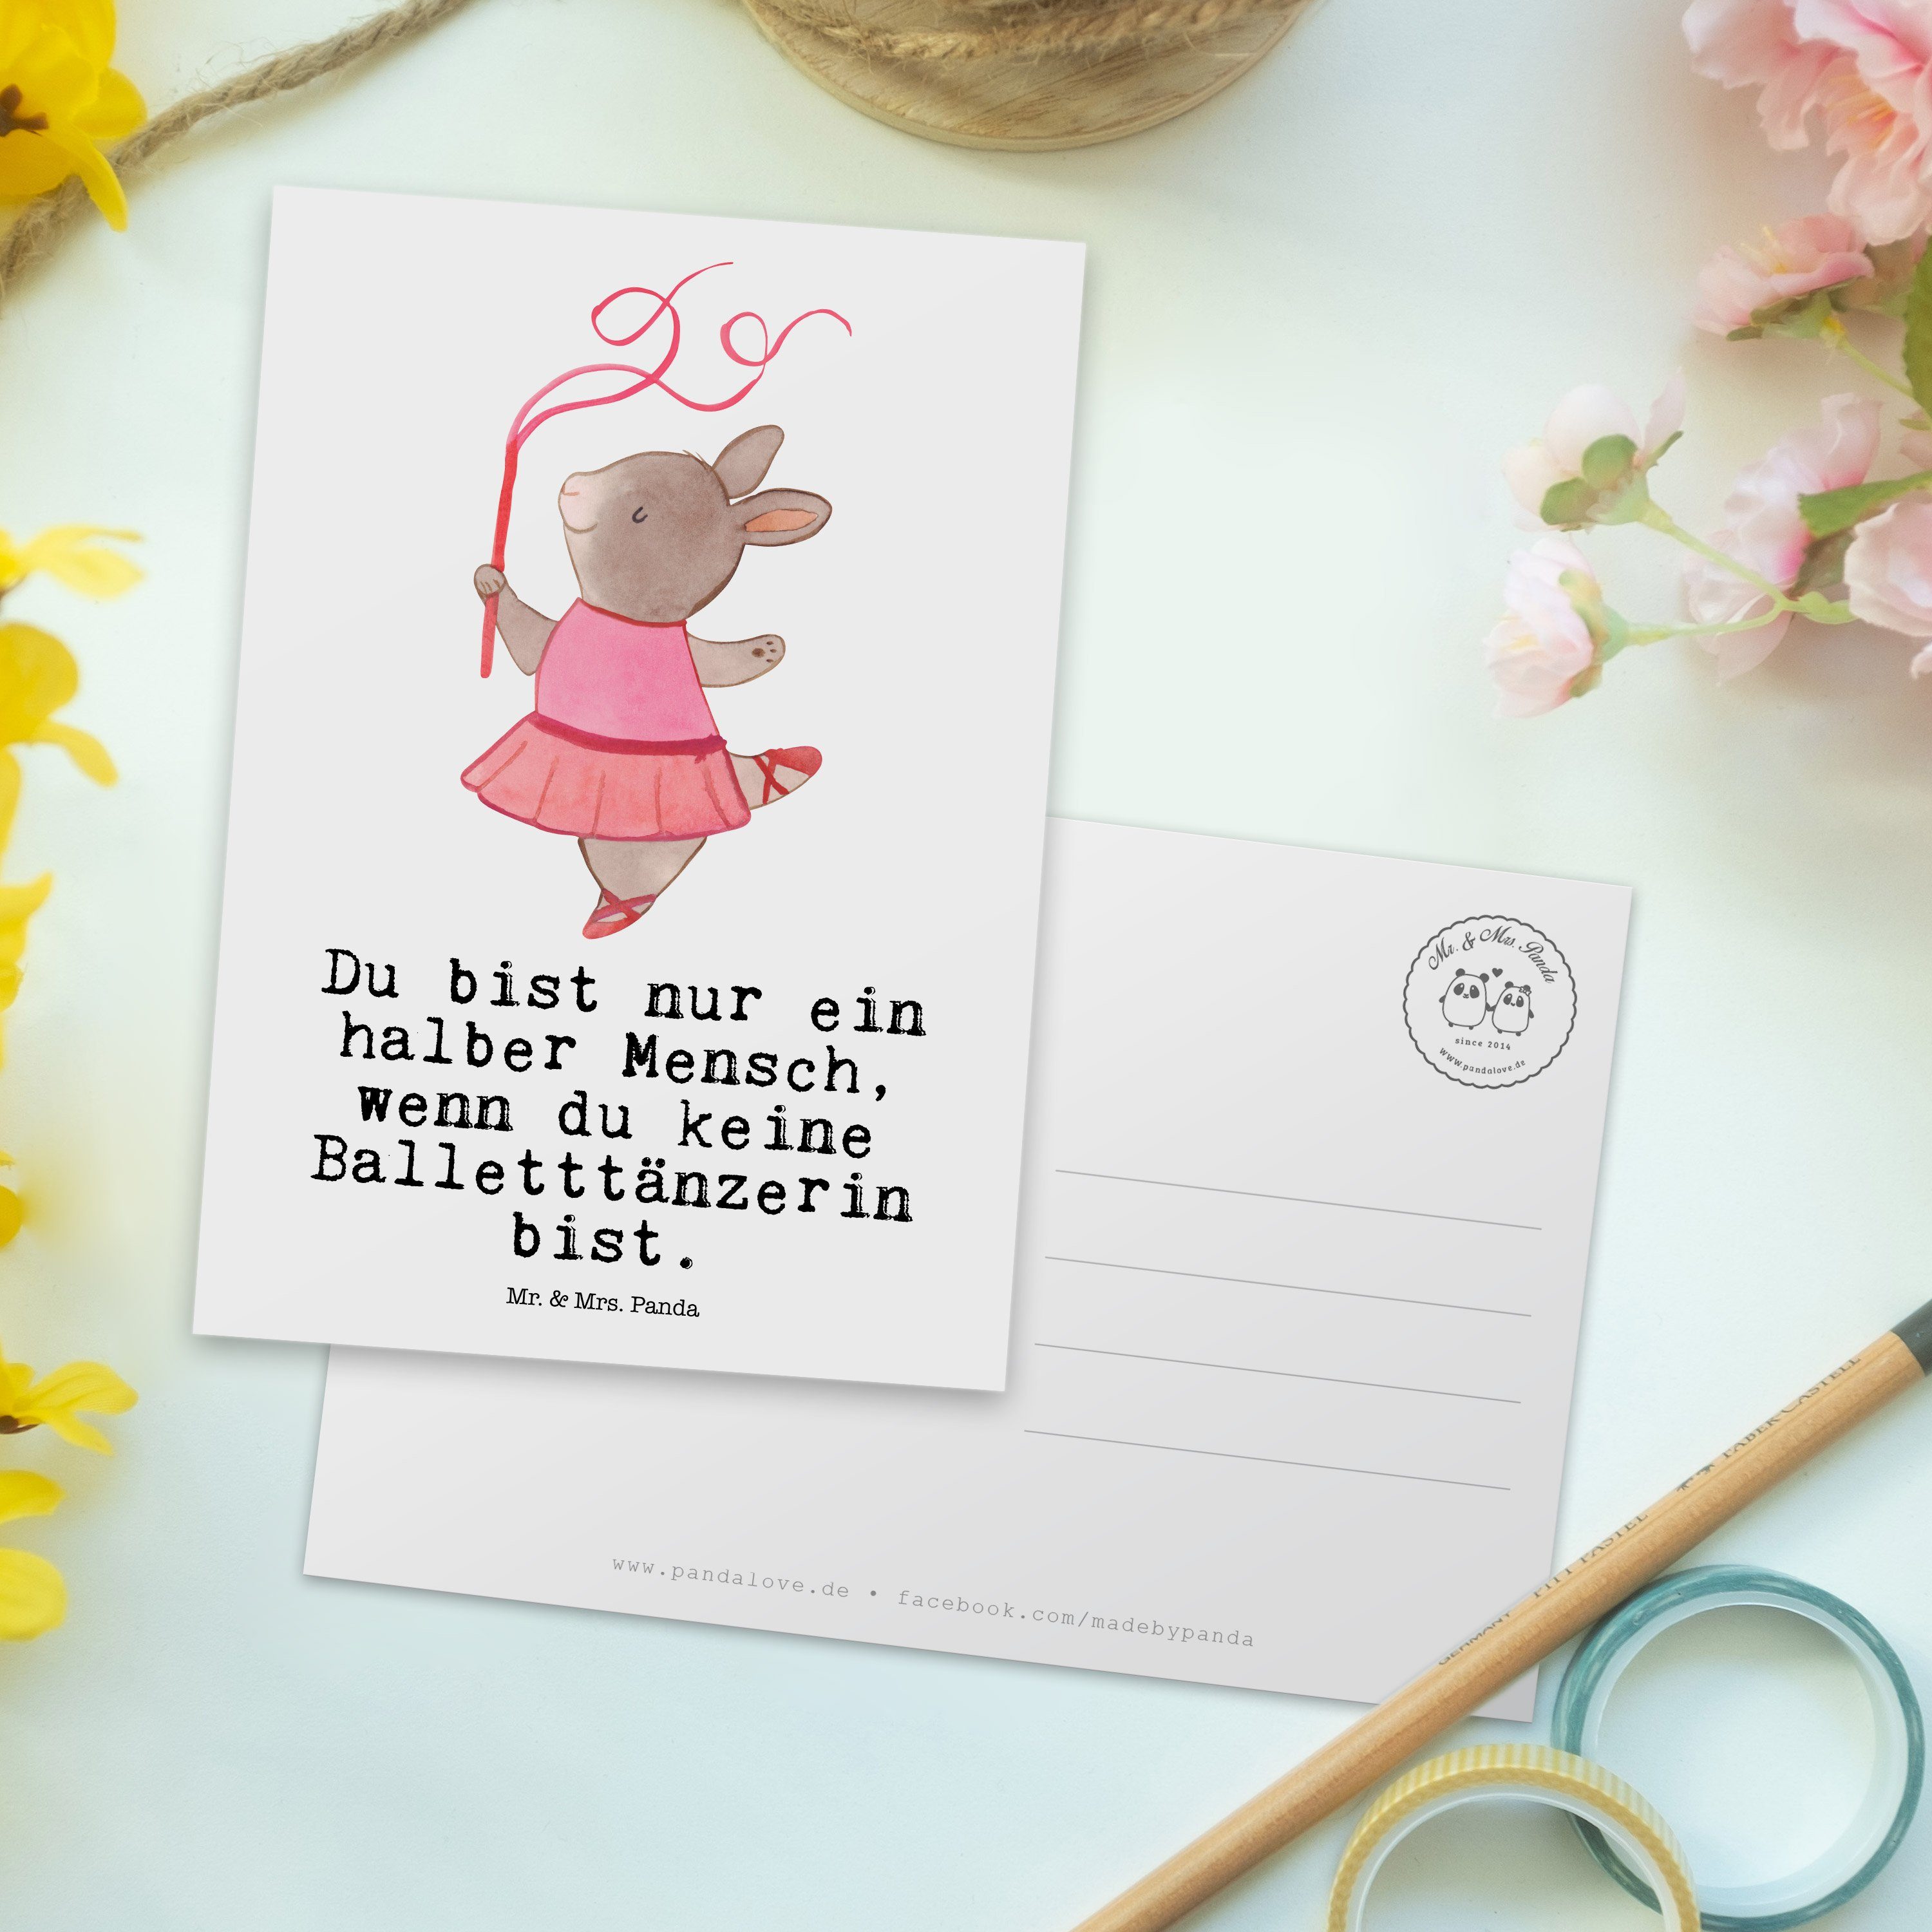 Mr. & - Mrs. mit Balletttänzerin Panda - Weiß Postkarte Herz Einlad Geschenk, Ballettunterricht